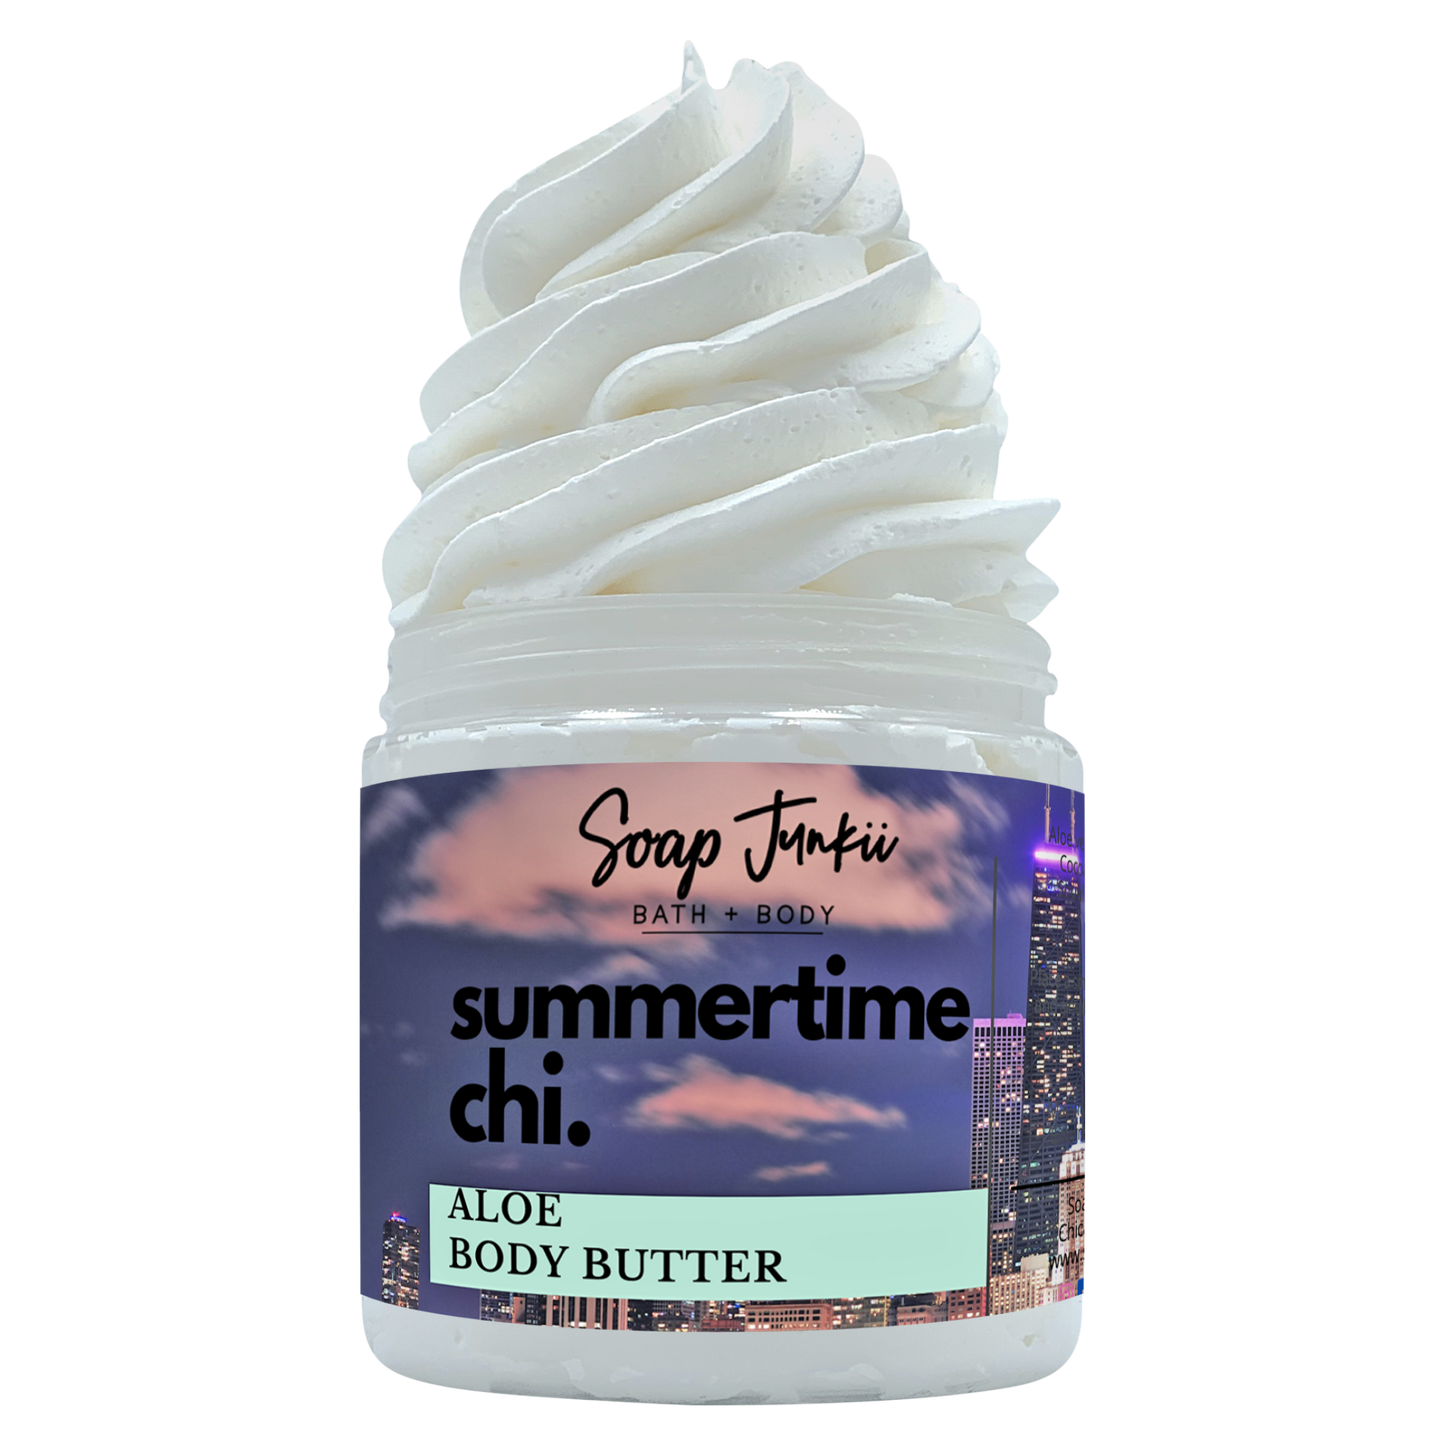 Summertime CHI Aloe Body Butter